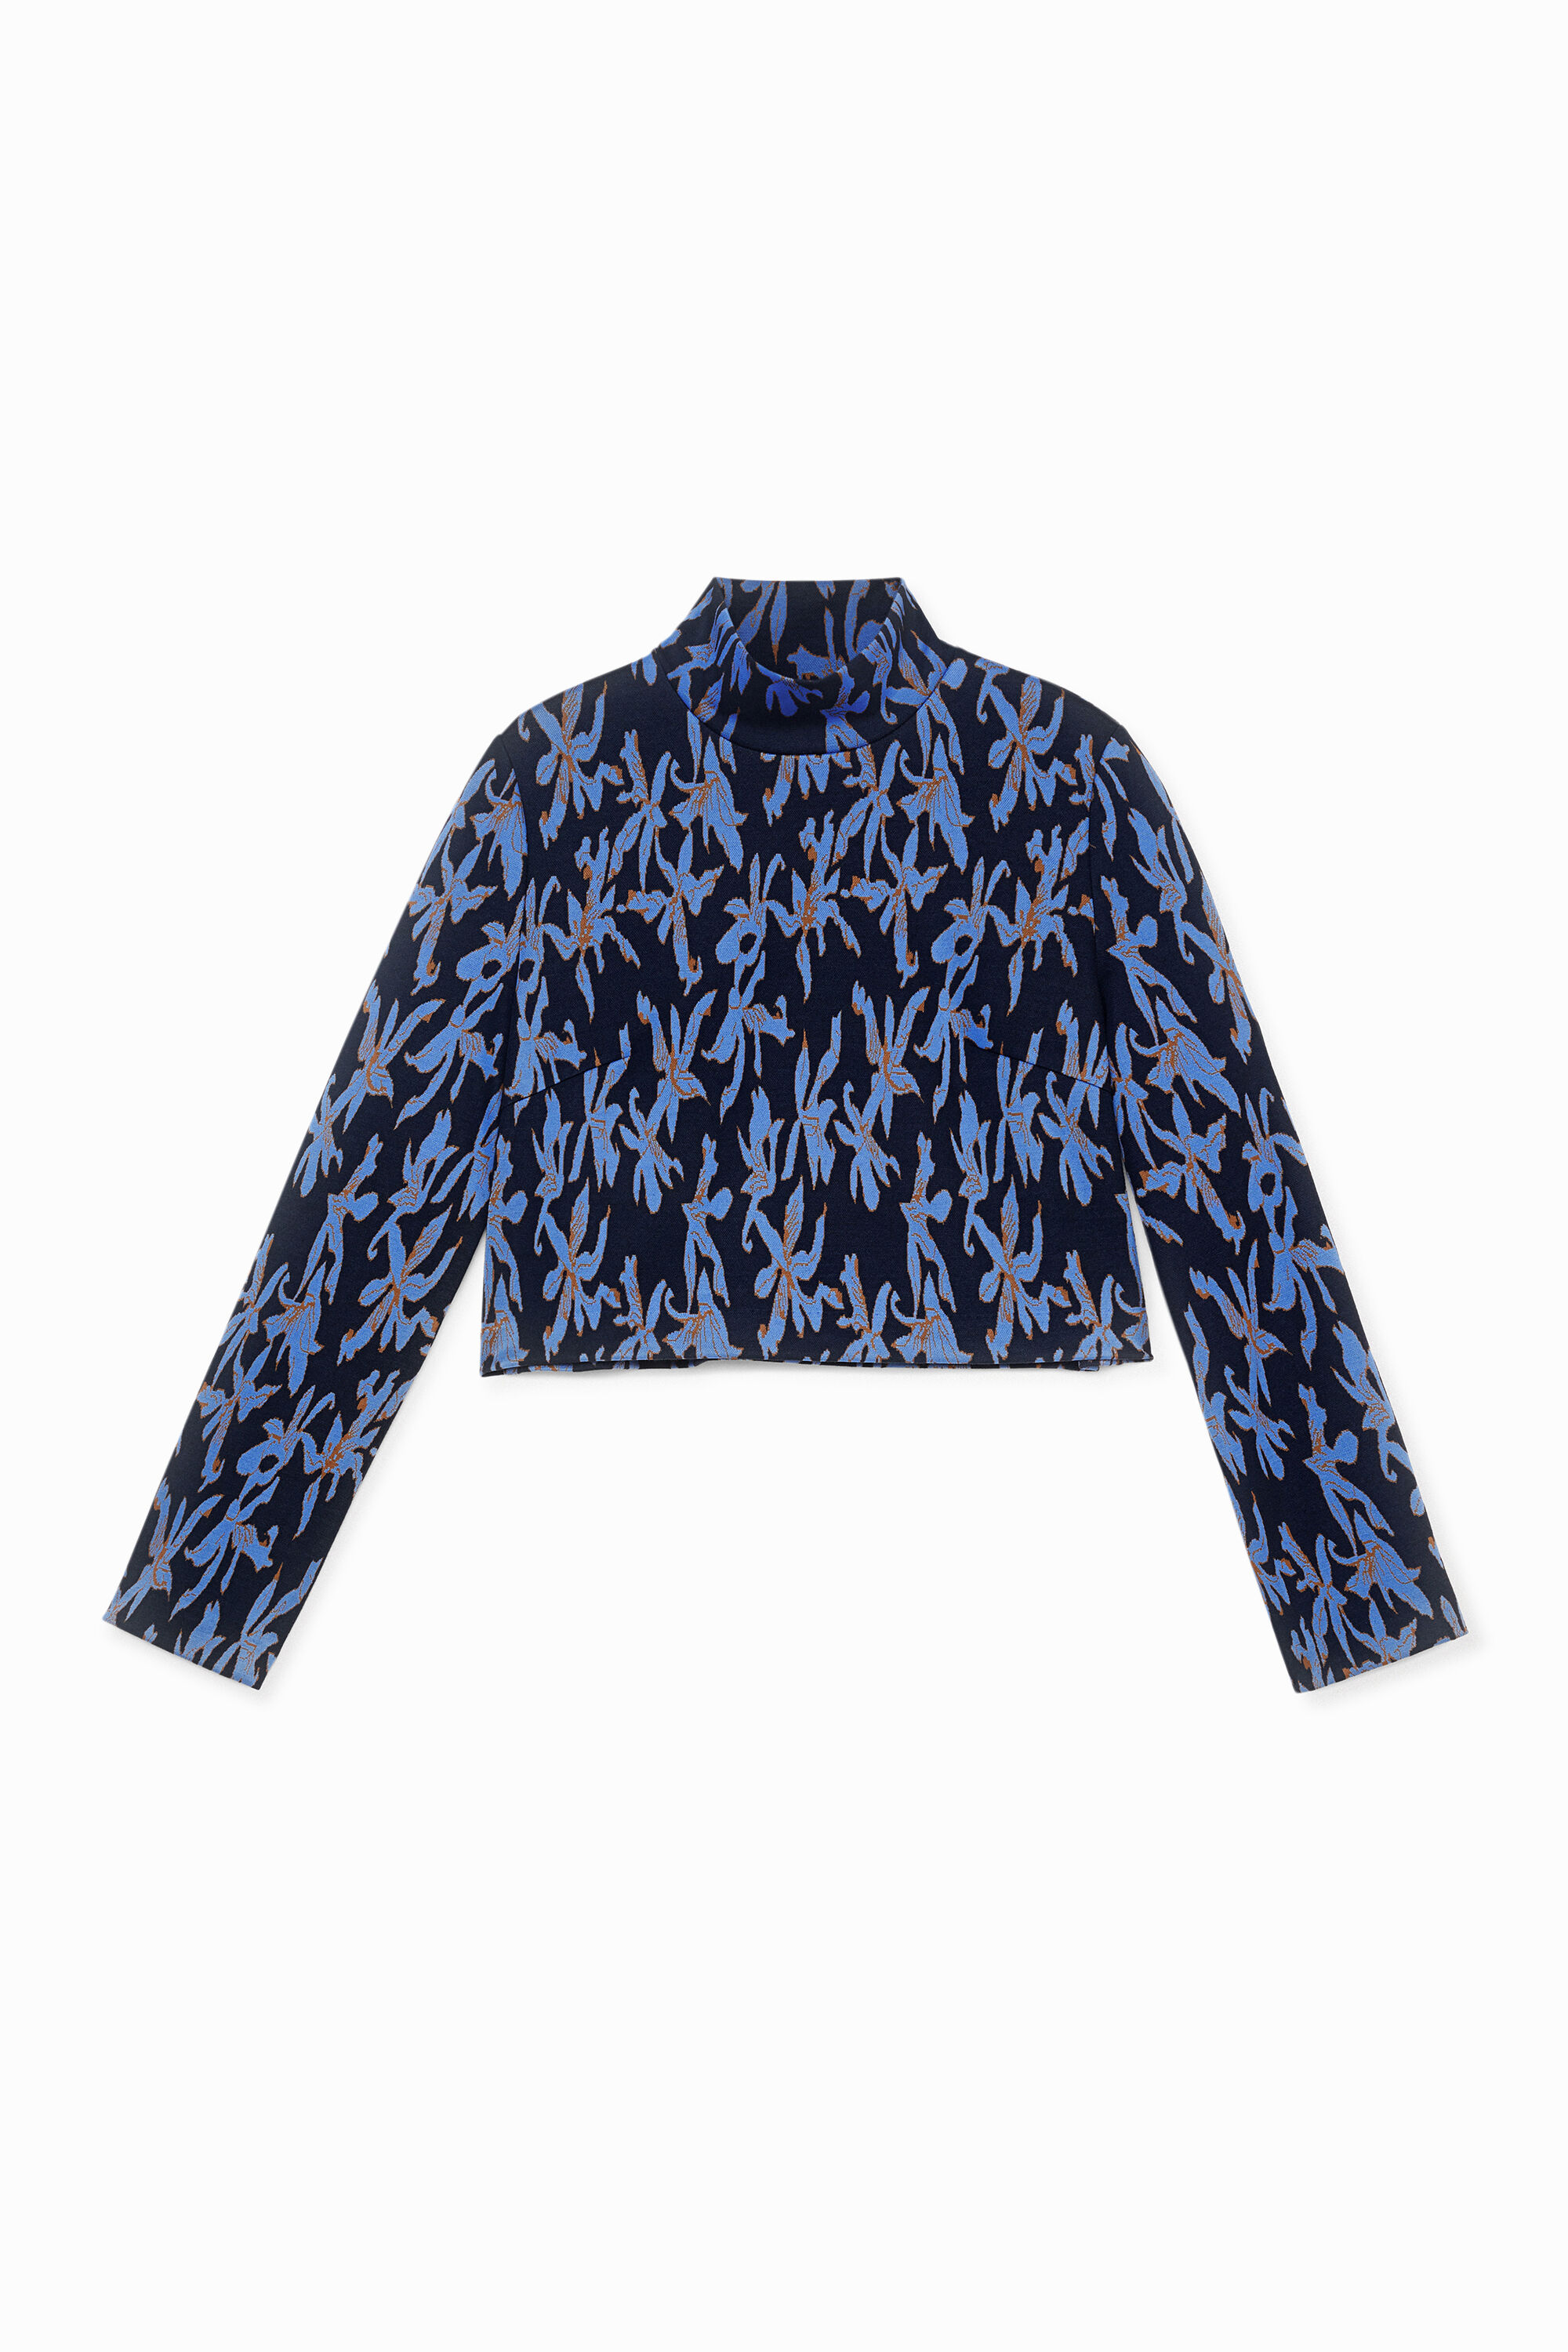 Knit jumper high neck - BLUE - XL